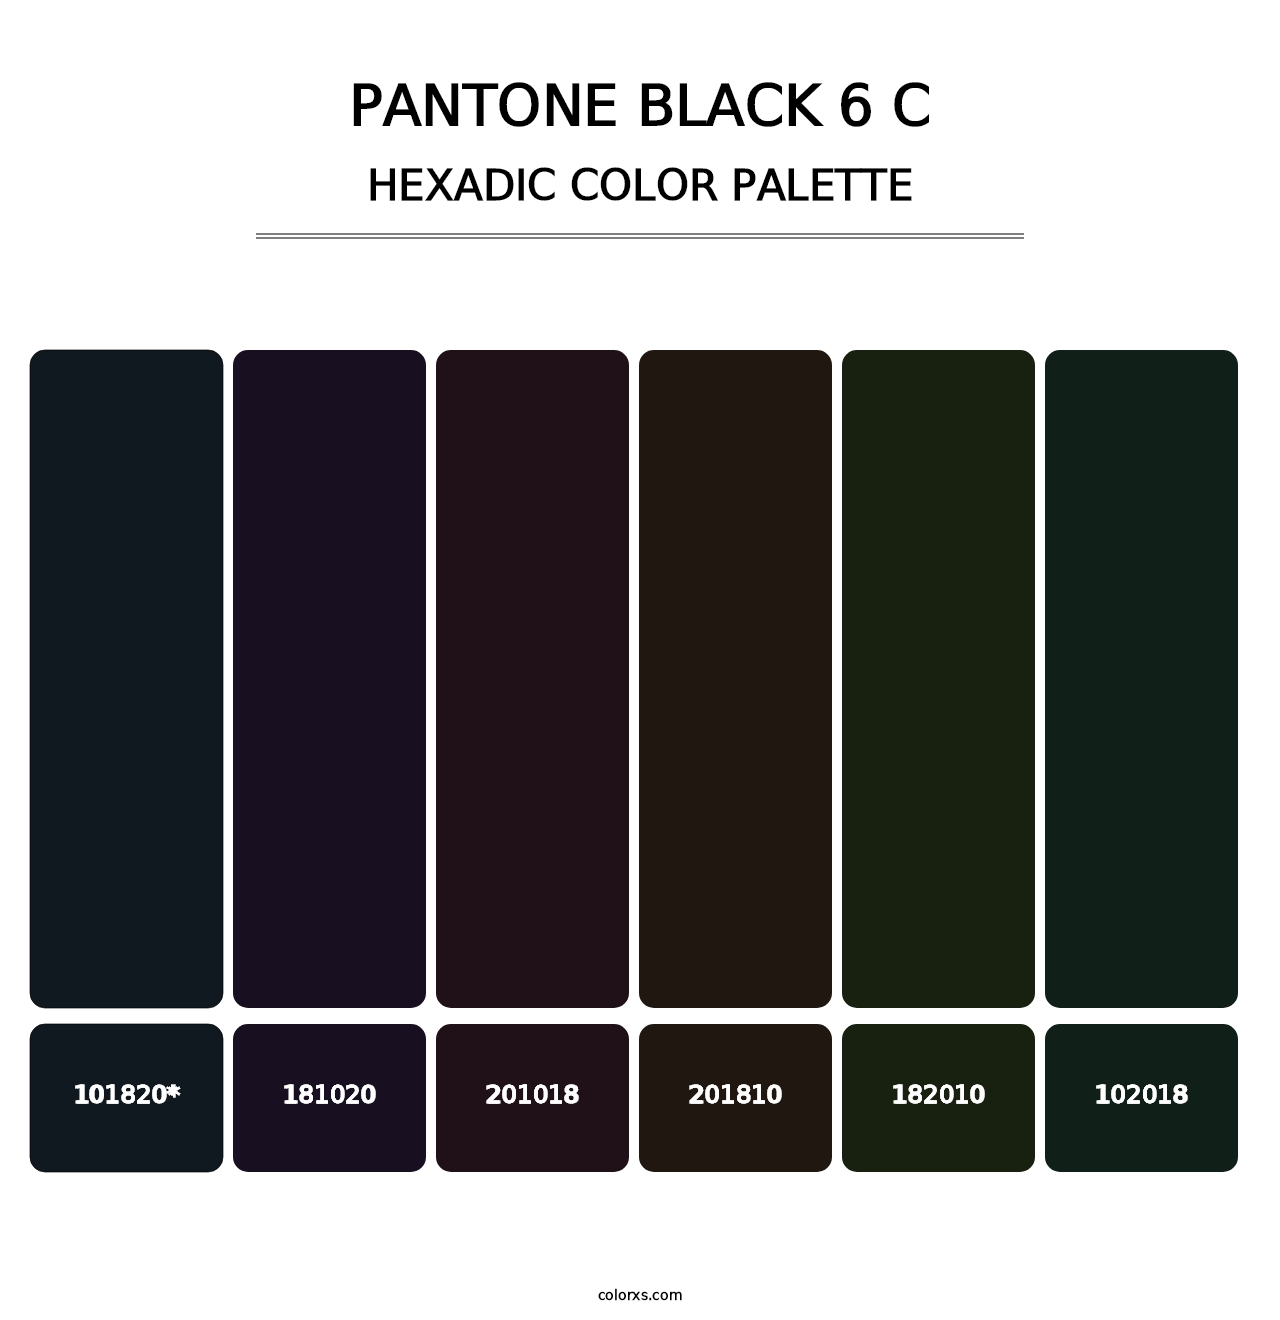 PANTONE Black 6 C - Hexadic Color Palette